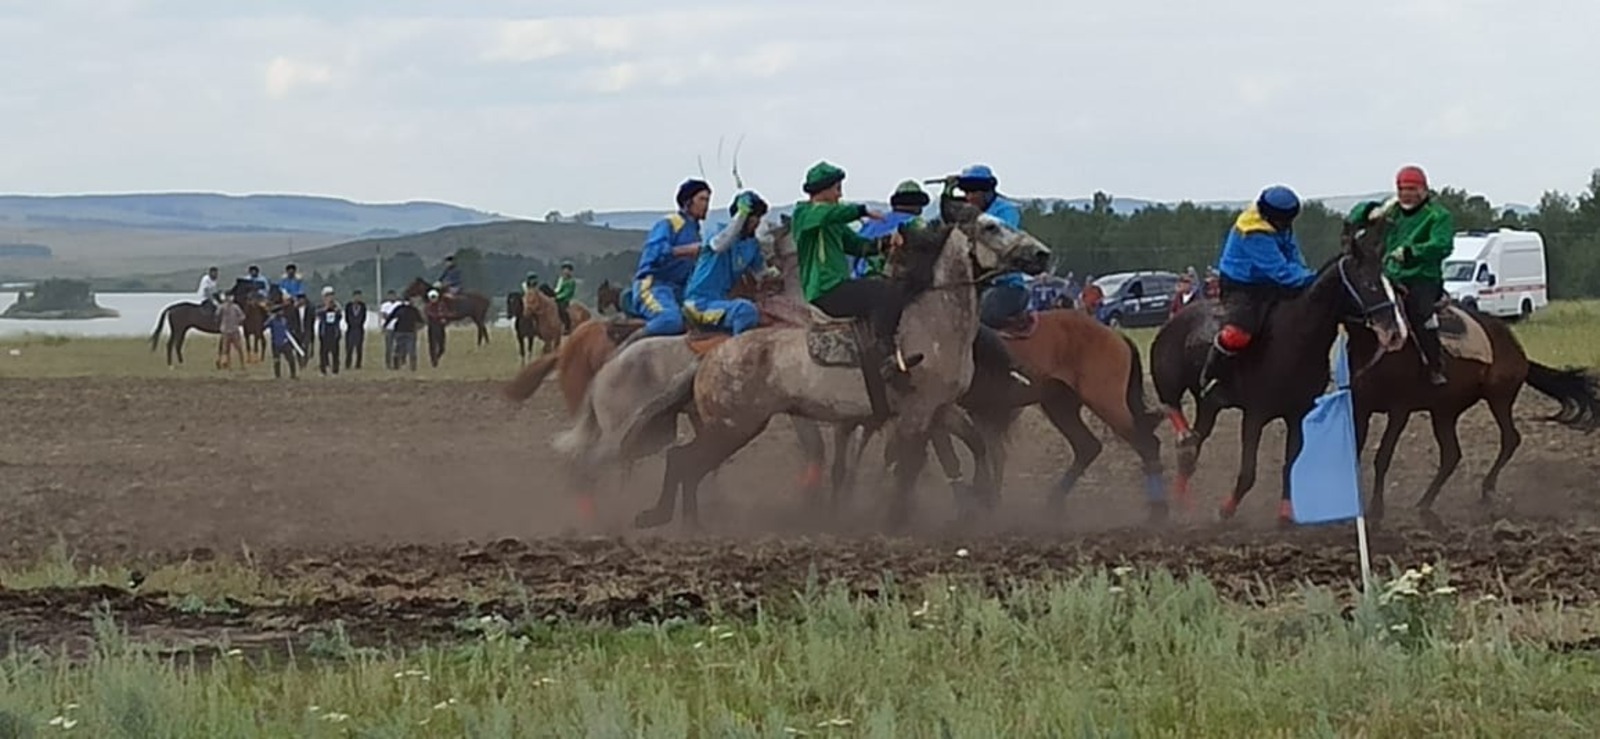 На специальном поле, где проходит фестиваль башкирской лошади, начались финальная игра "Ылак" и скачки